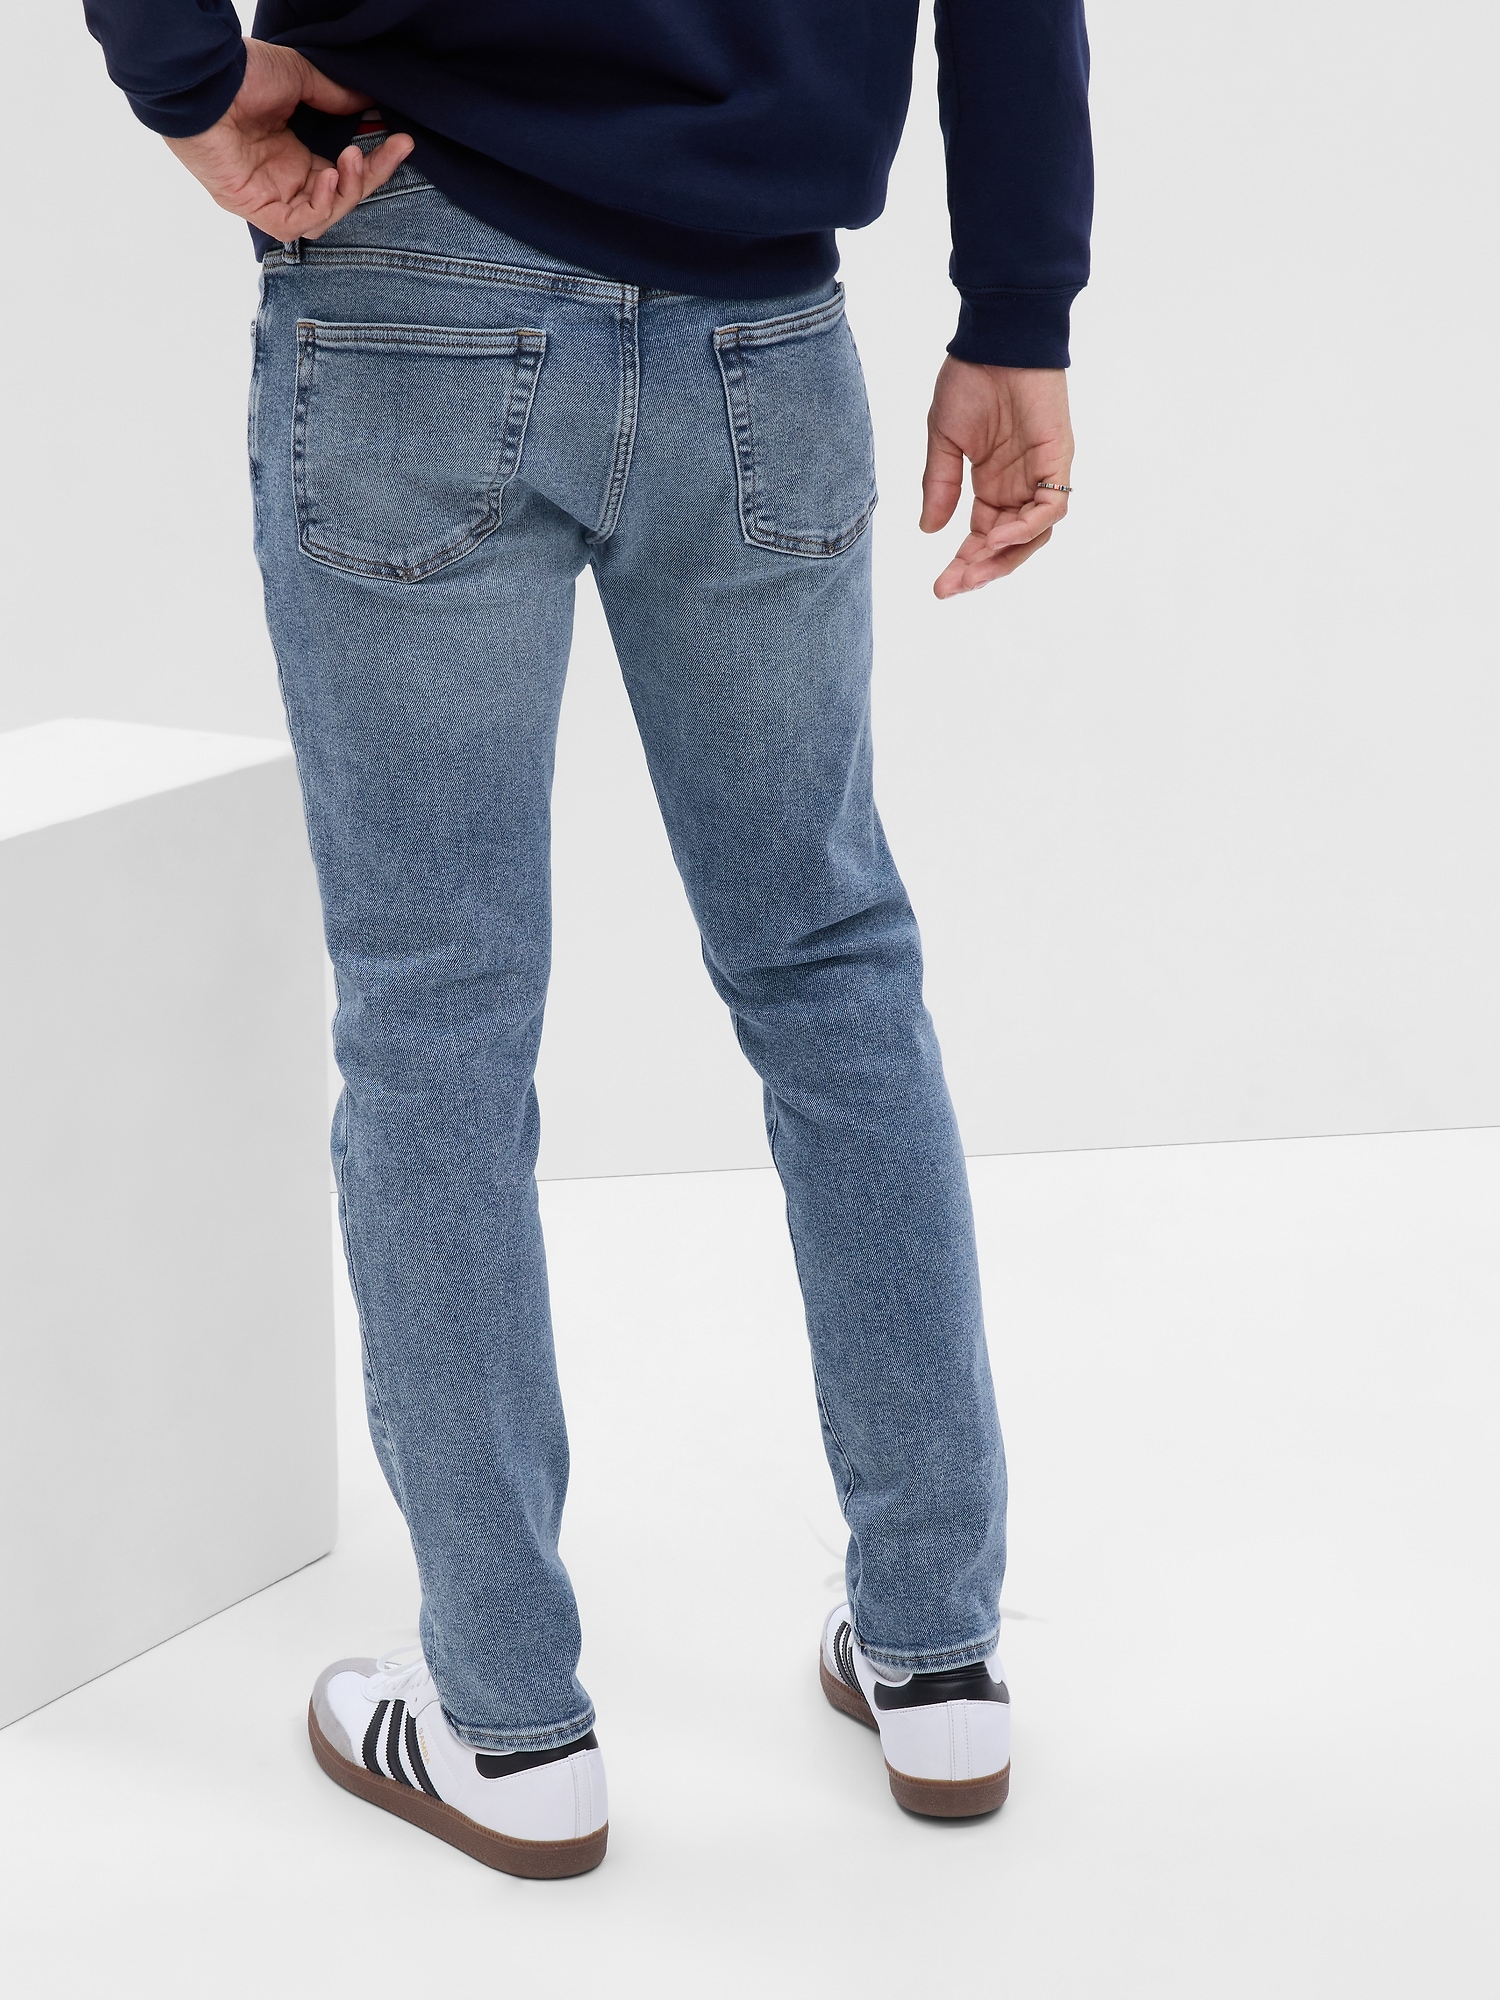 Gap Slim & Skinny Jeans for Men